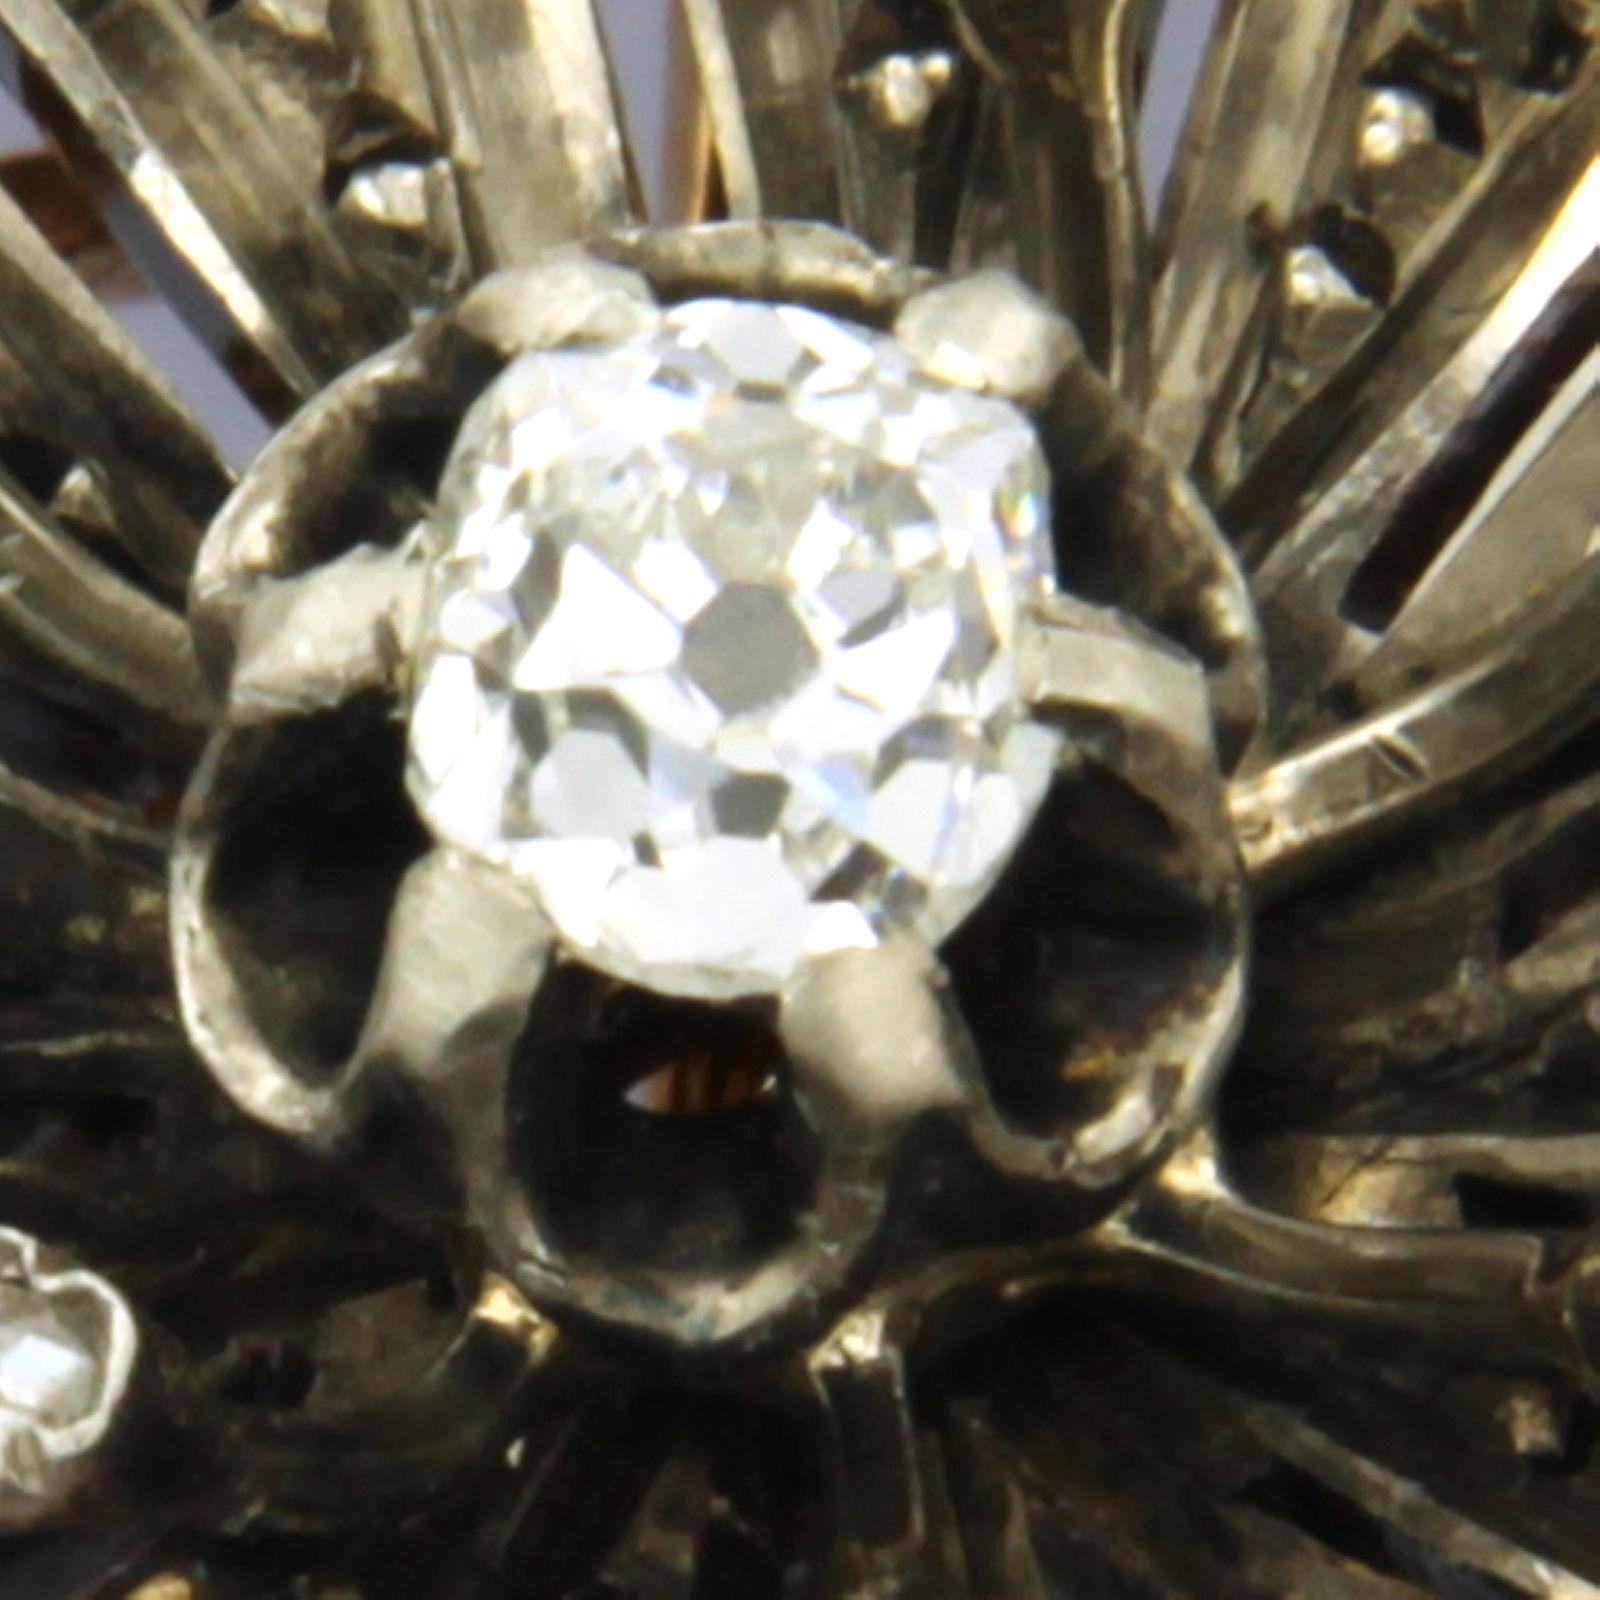 Brosche aus 18 Karat Gold und Silber, besetzt mit Diamanten im Minen- und Rosenschliff (insgesamt ca. 0,20 ct G-H / SI) - 3,4 cm x 2,7 cm

ausführliche Beschreibung

Die Brosche ist 3,4 cm breit und 2,7 cm hoch

Gewicht: 9,8 Gramm

Set mit:

- 1 x